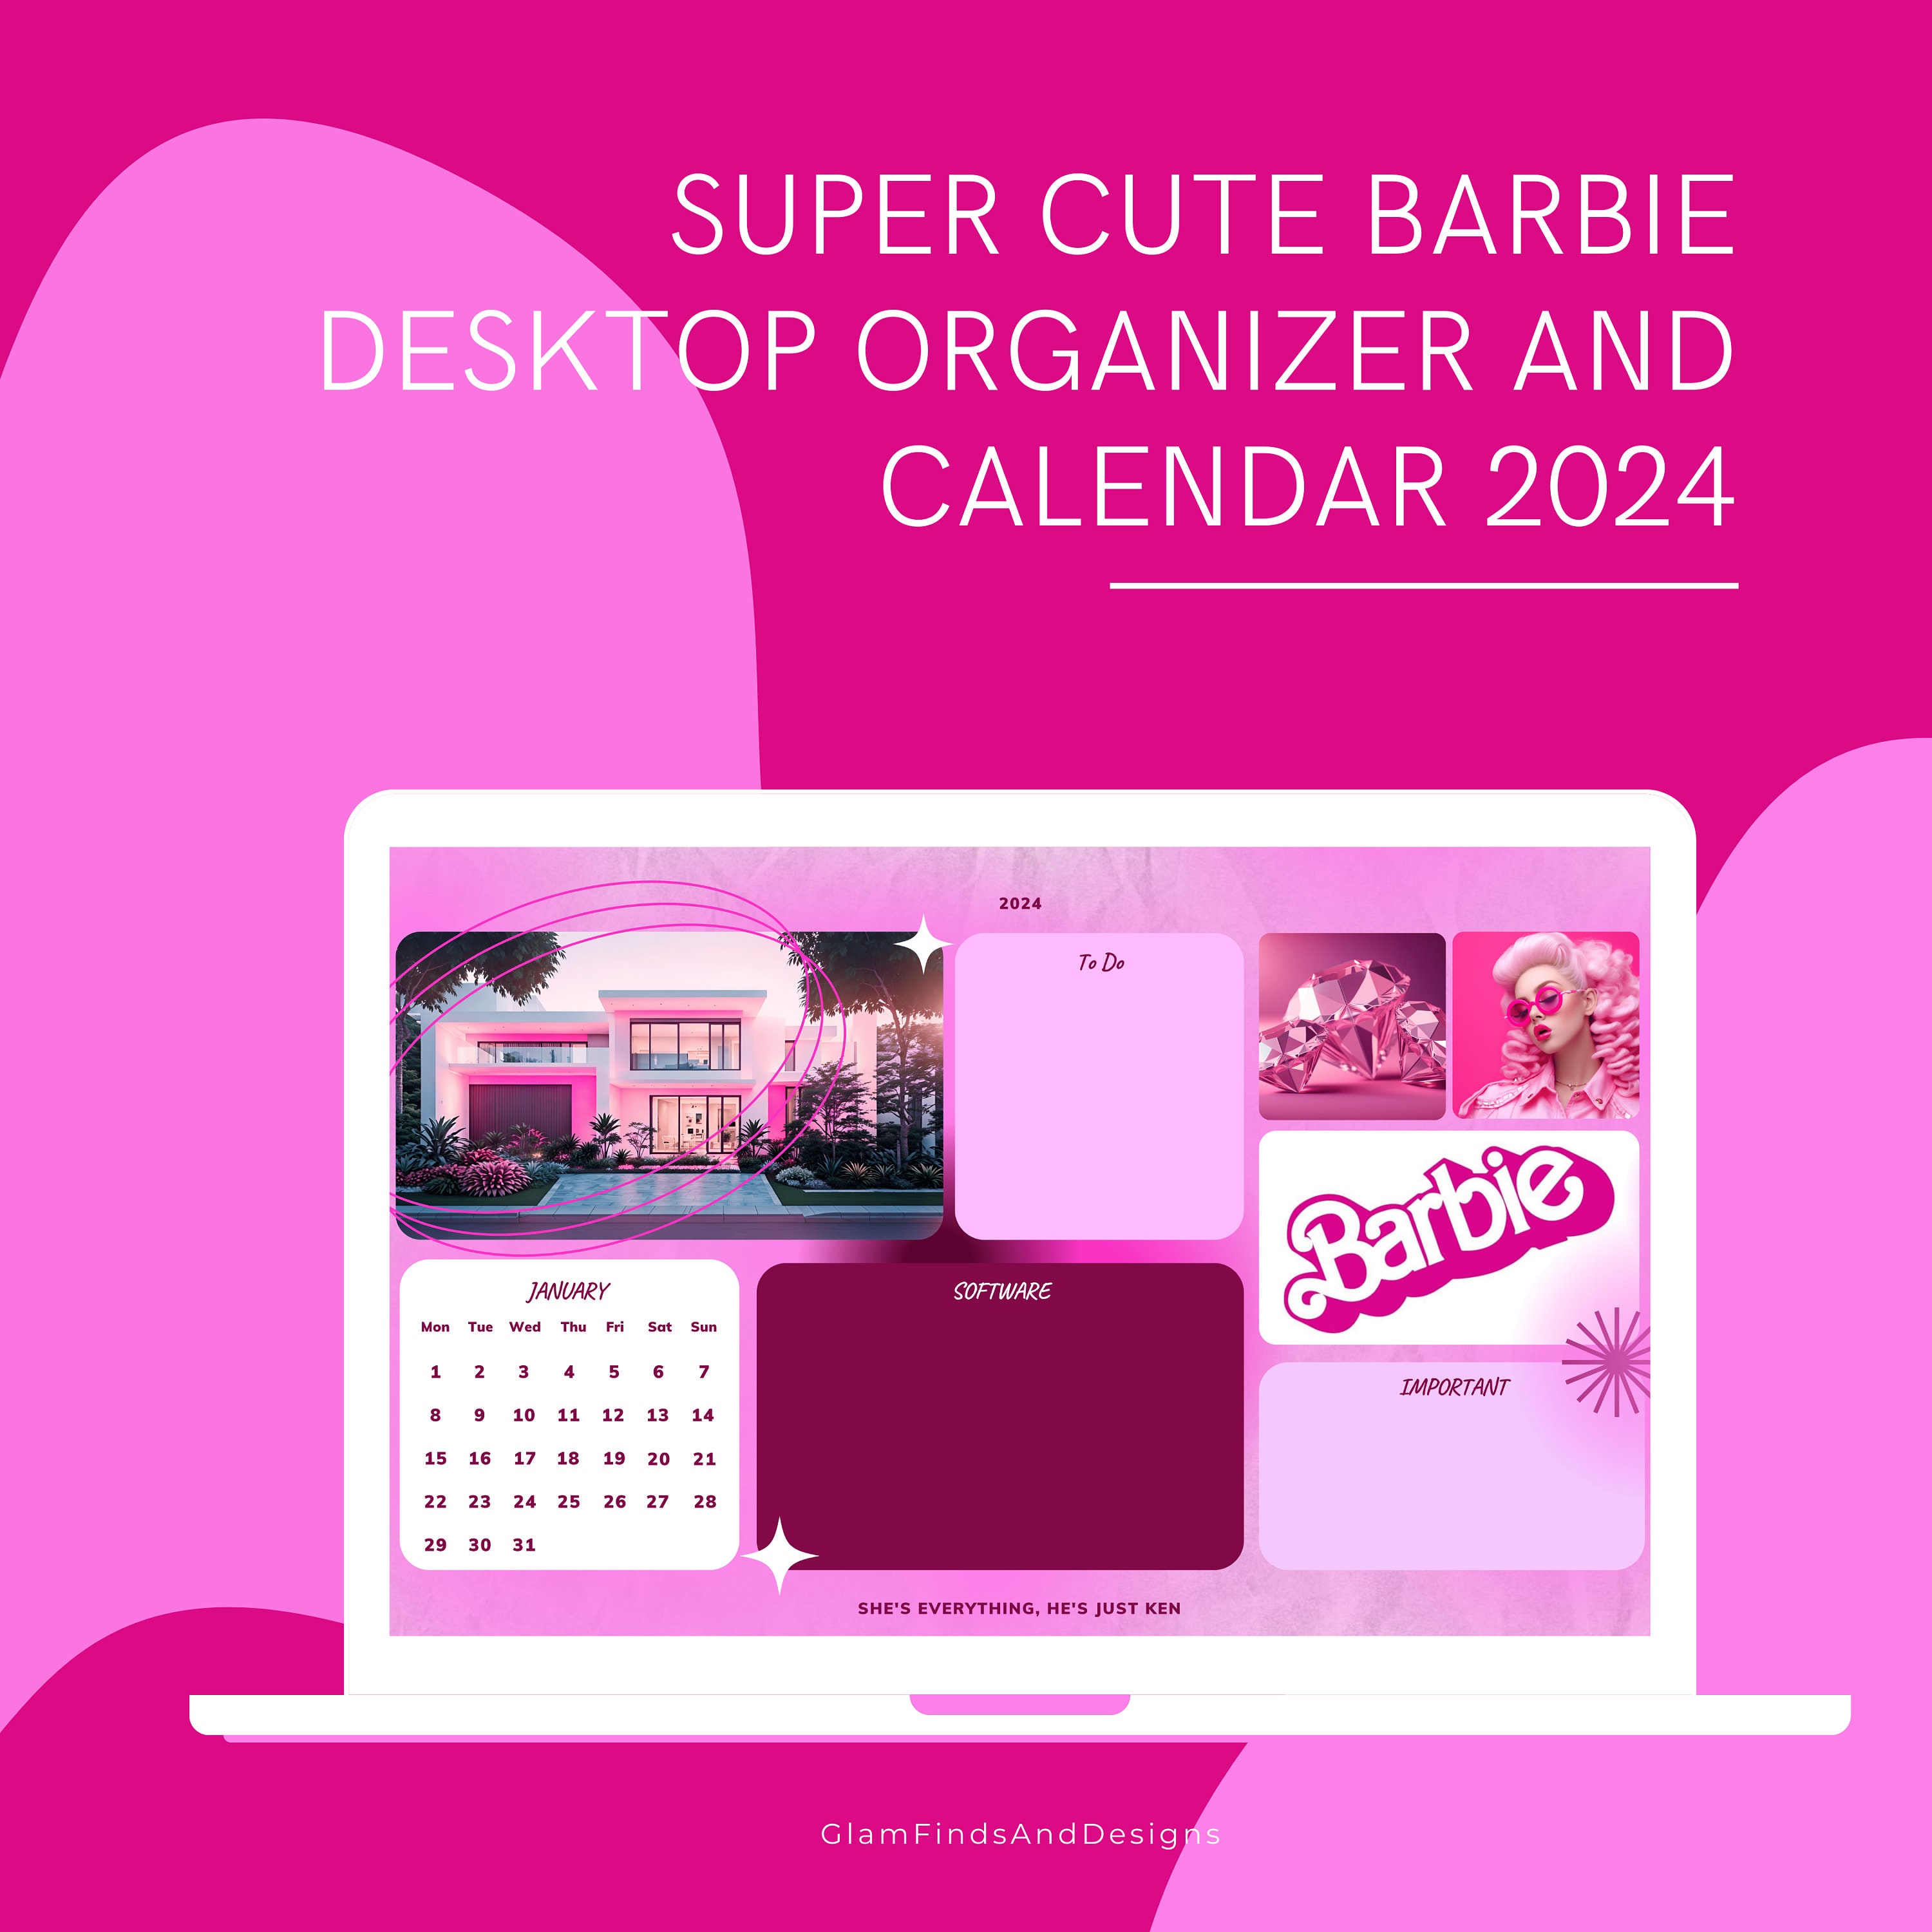 Barbie-themed Desktop Wallpaper Organizer With Calendar 2024 